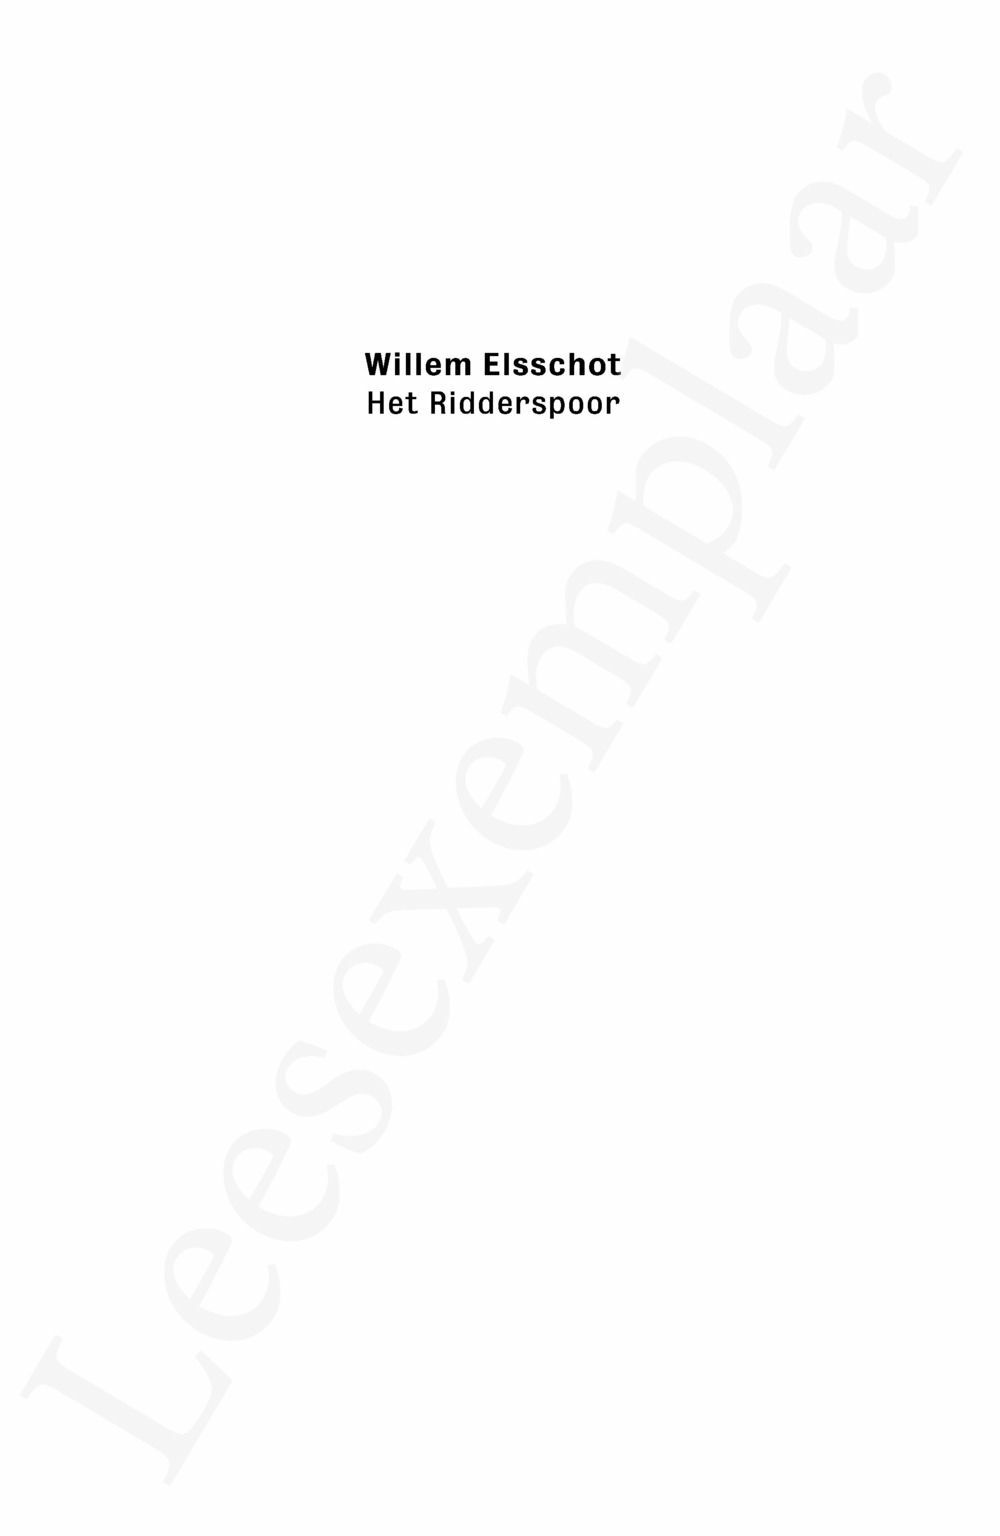 Preview: Willem Elsschot. Het Ridderspoor